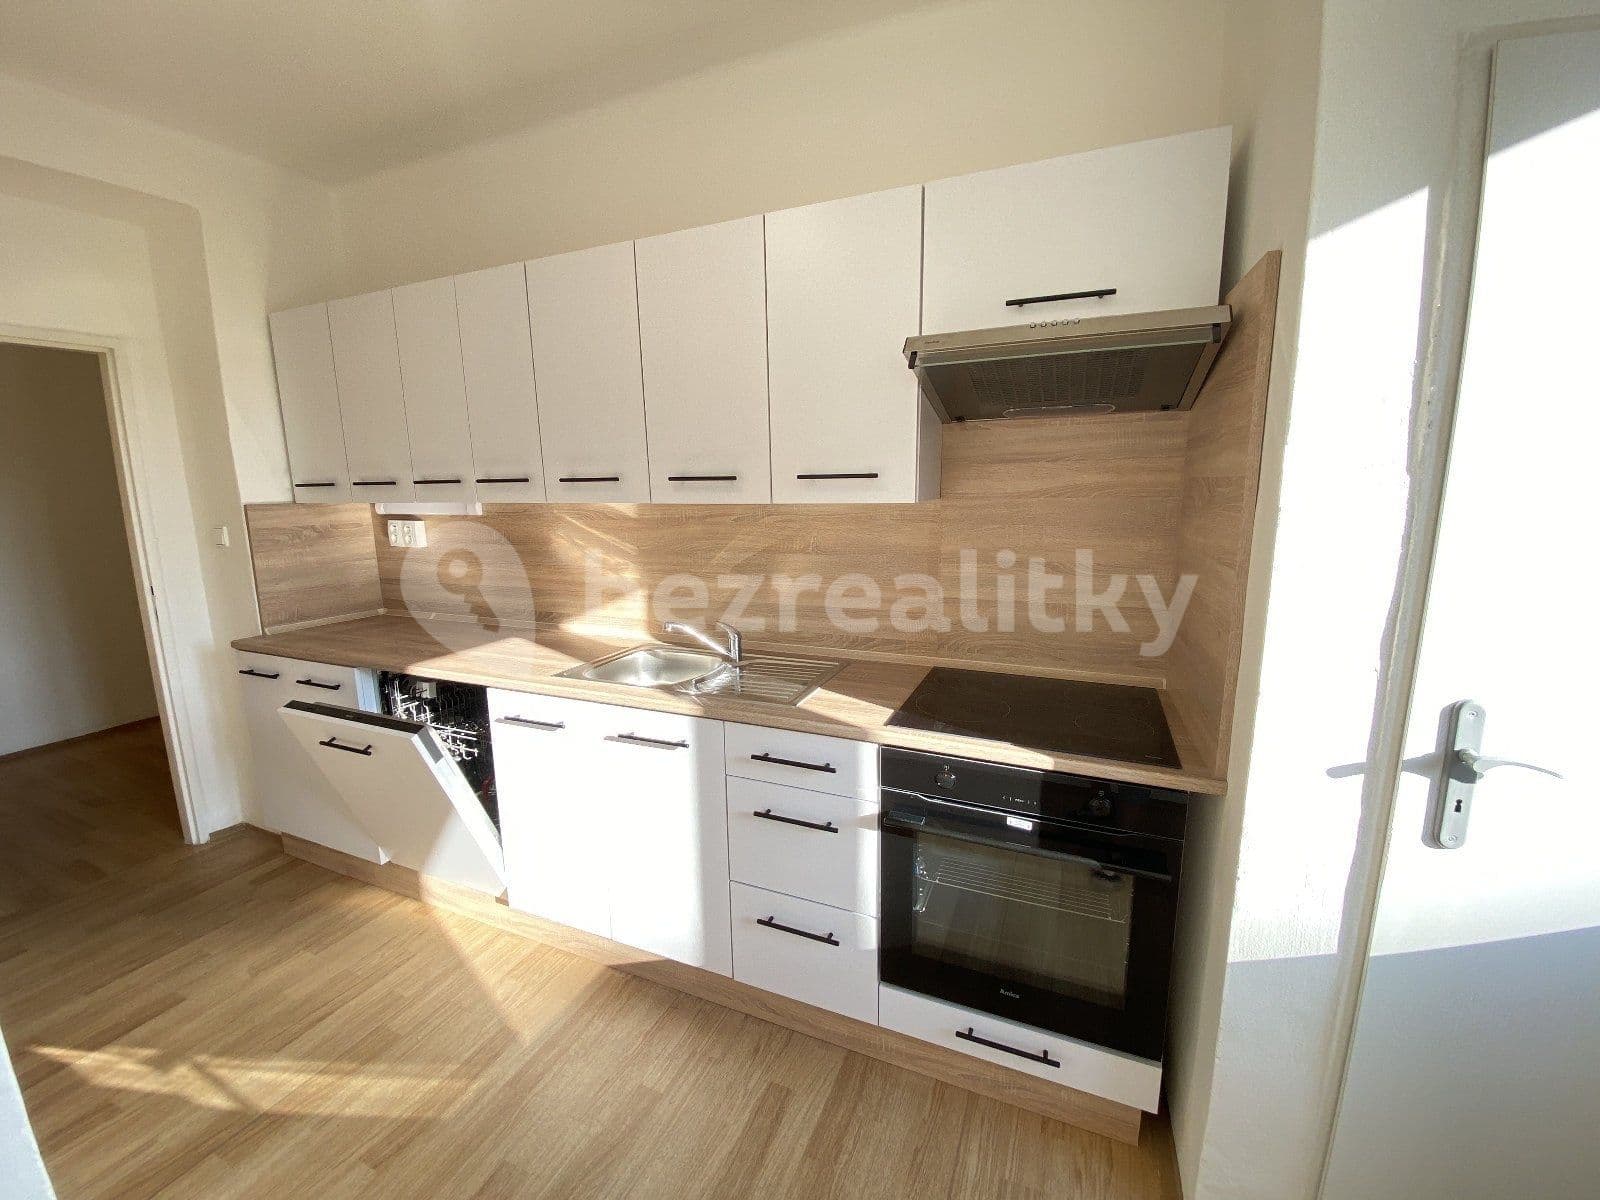 2 bedroom flat to rent, 54 m², Tylova, Havířov, Moravskoslezský Region